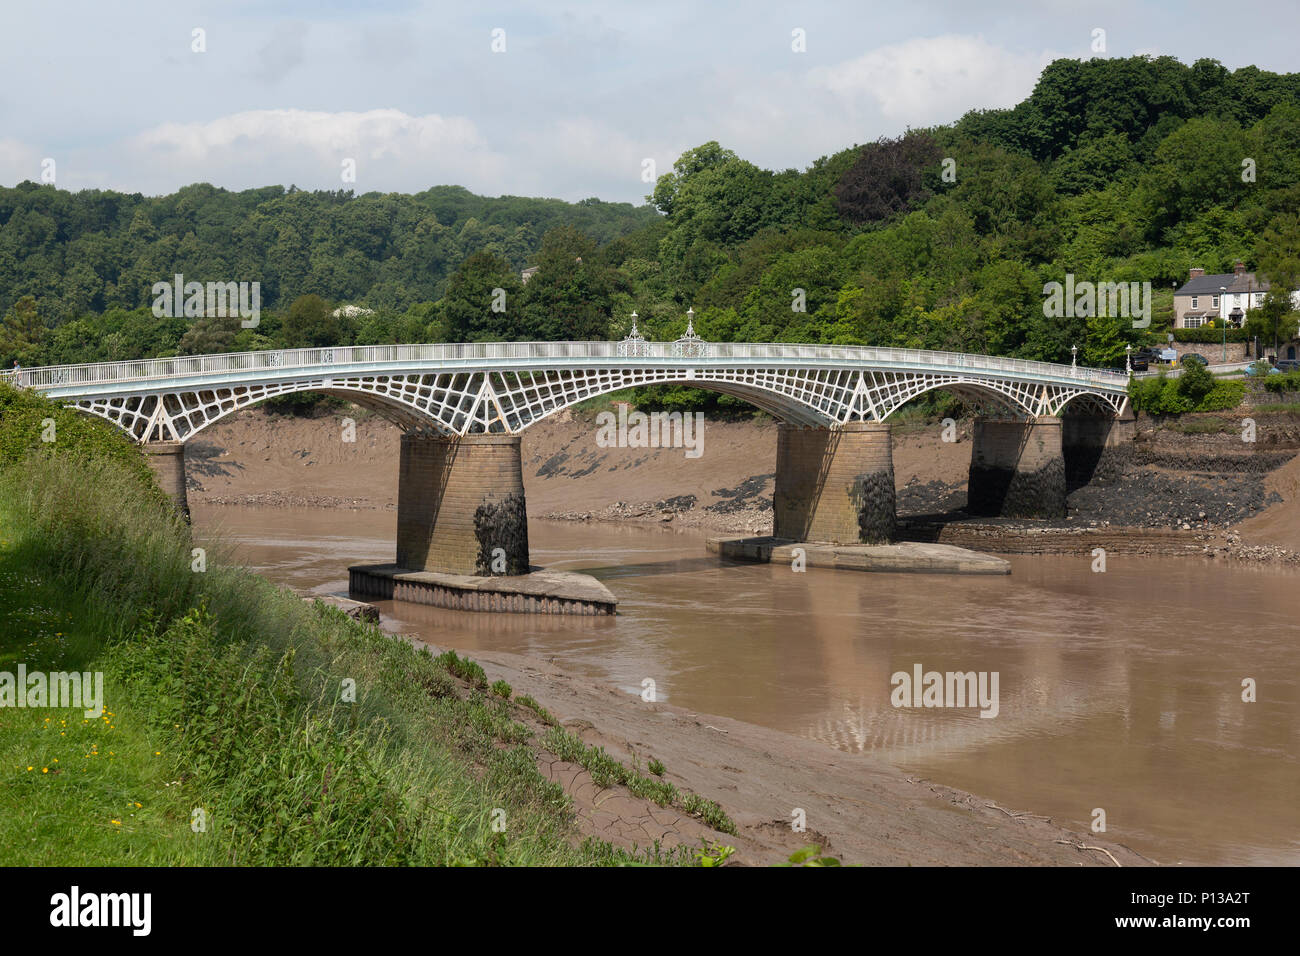 El viejo puente de Wye o antiguo puente en Chepstow cruza el río Wye entre Monmouthshire en Gales y Gloucestershire en Inglaterra. Construido en 1816. Foto de stock